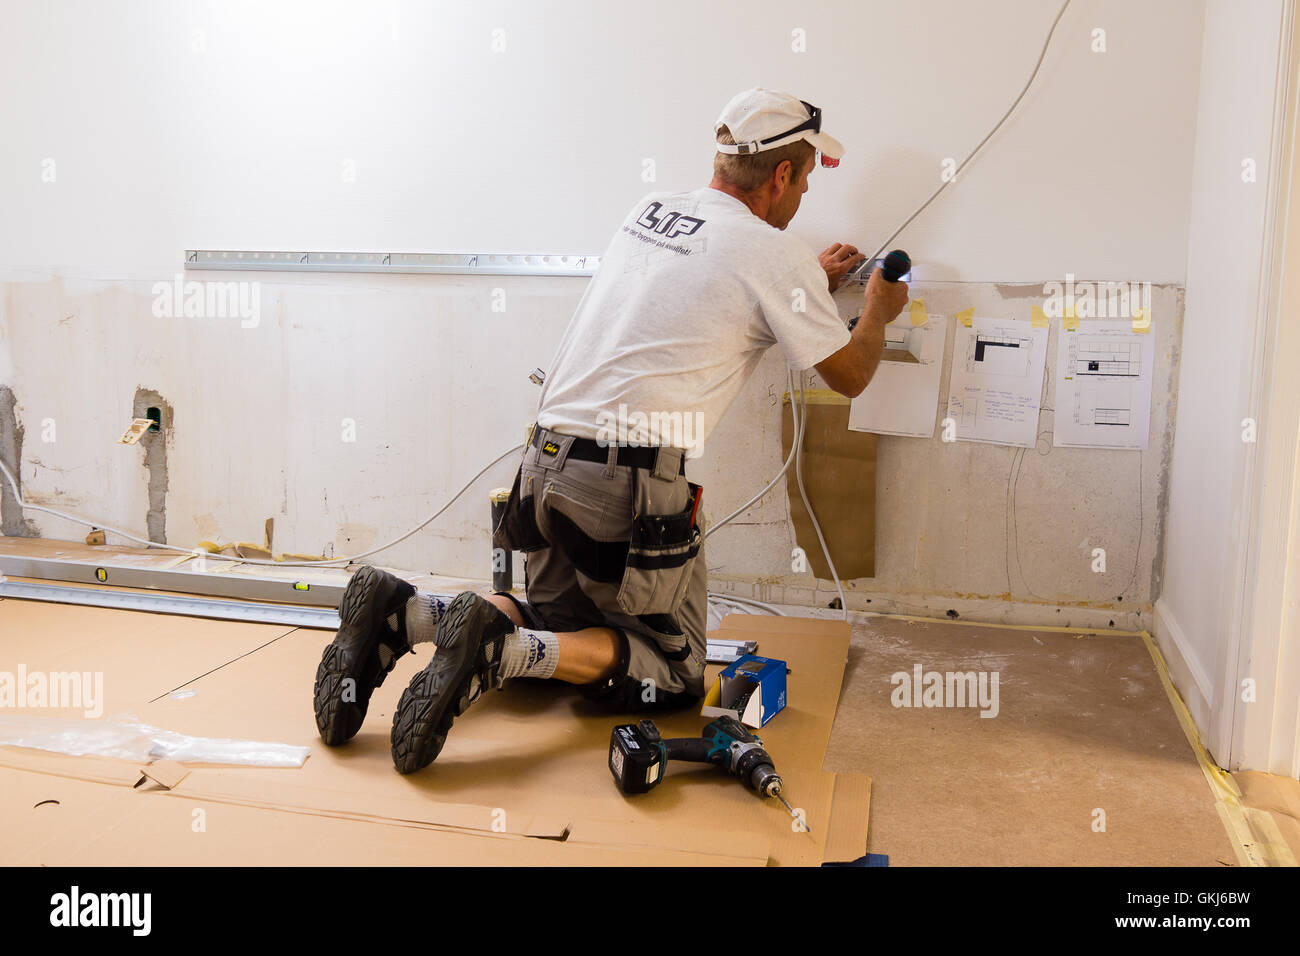 Montaje de un carpintero cocina IKEA con destornillador y cuenta con modelos en la pared. Foto de stock